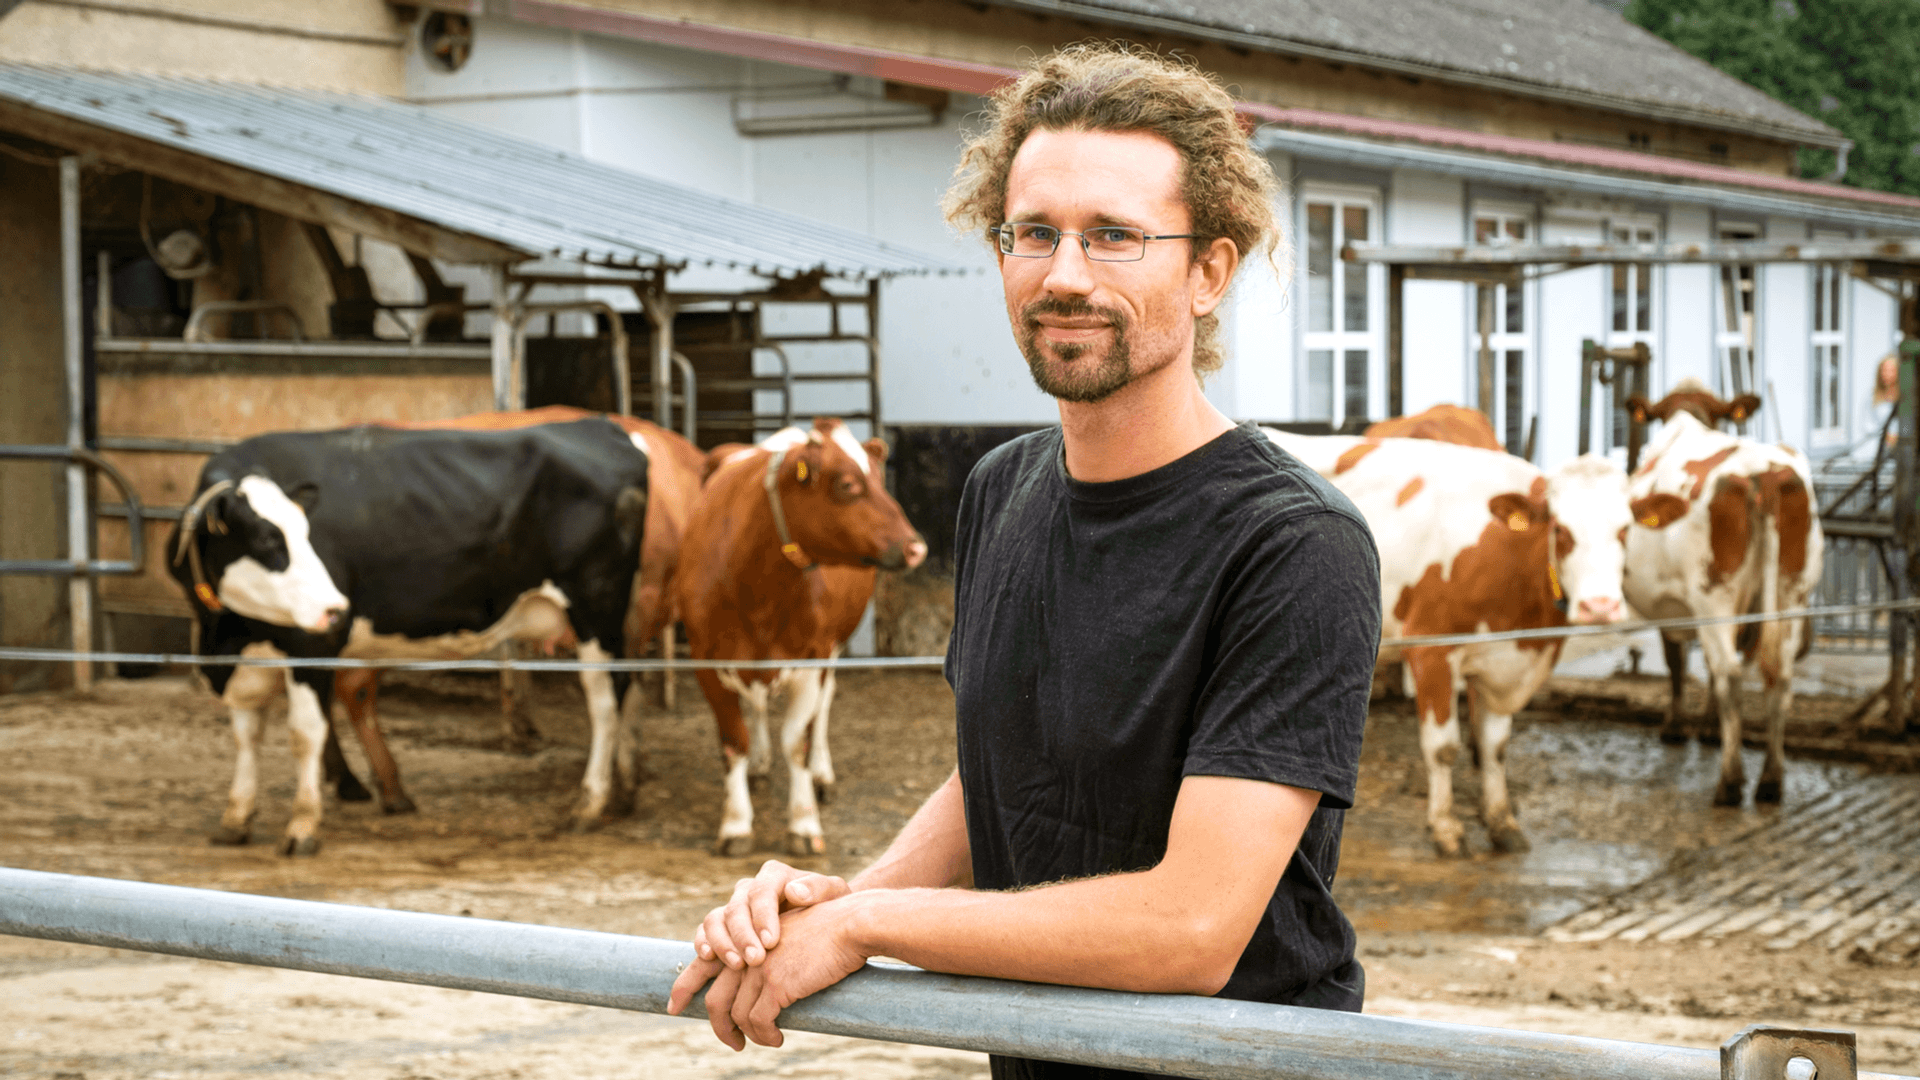 Mann mit Brille steht vor einem Kuhgehege